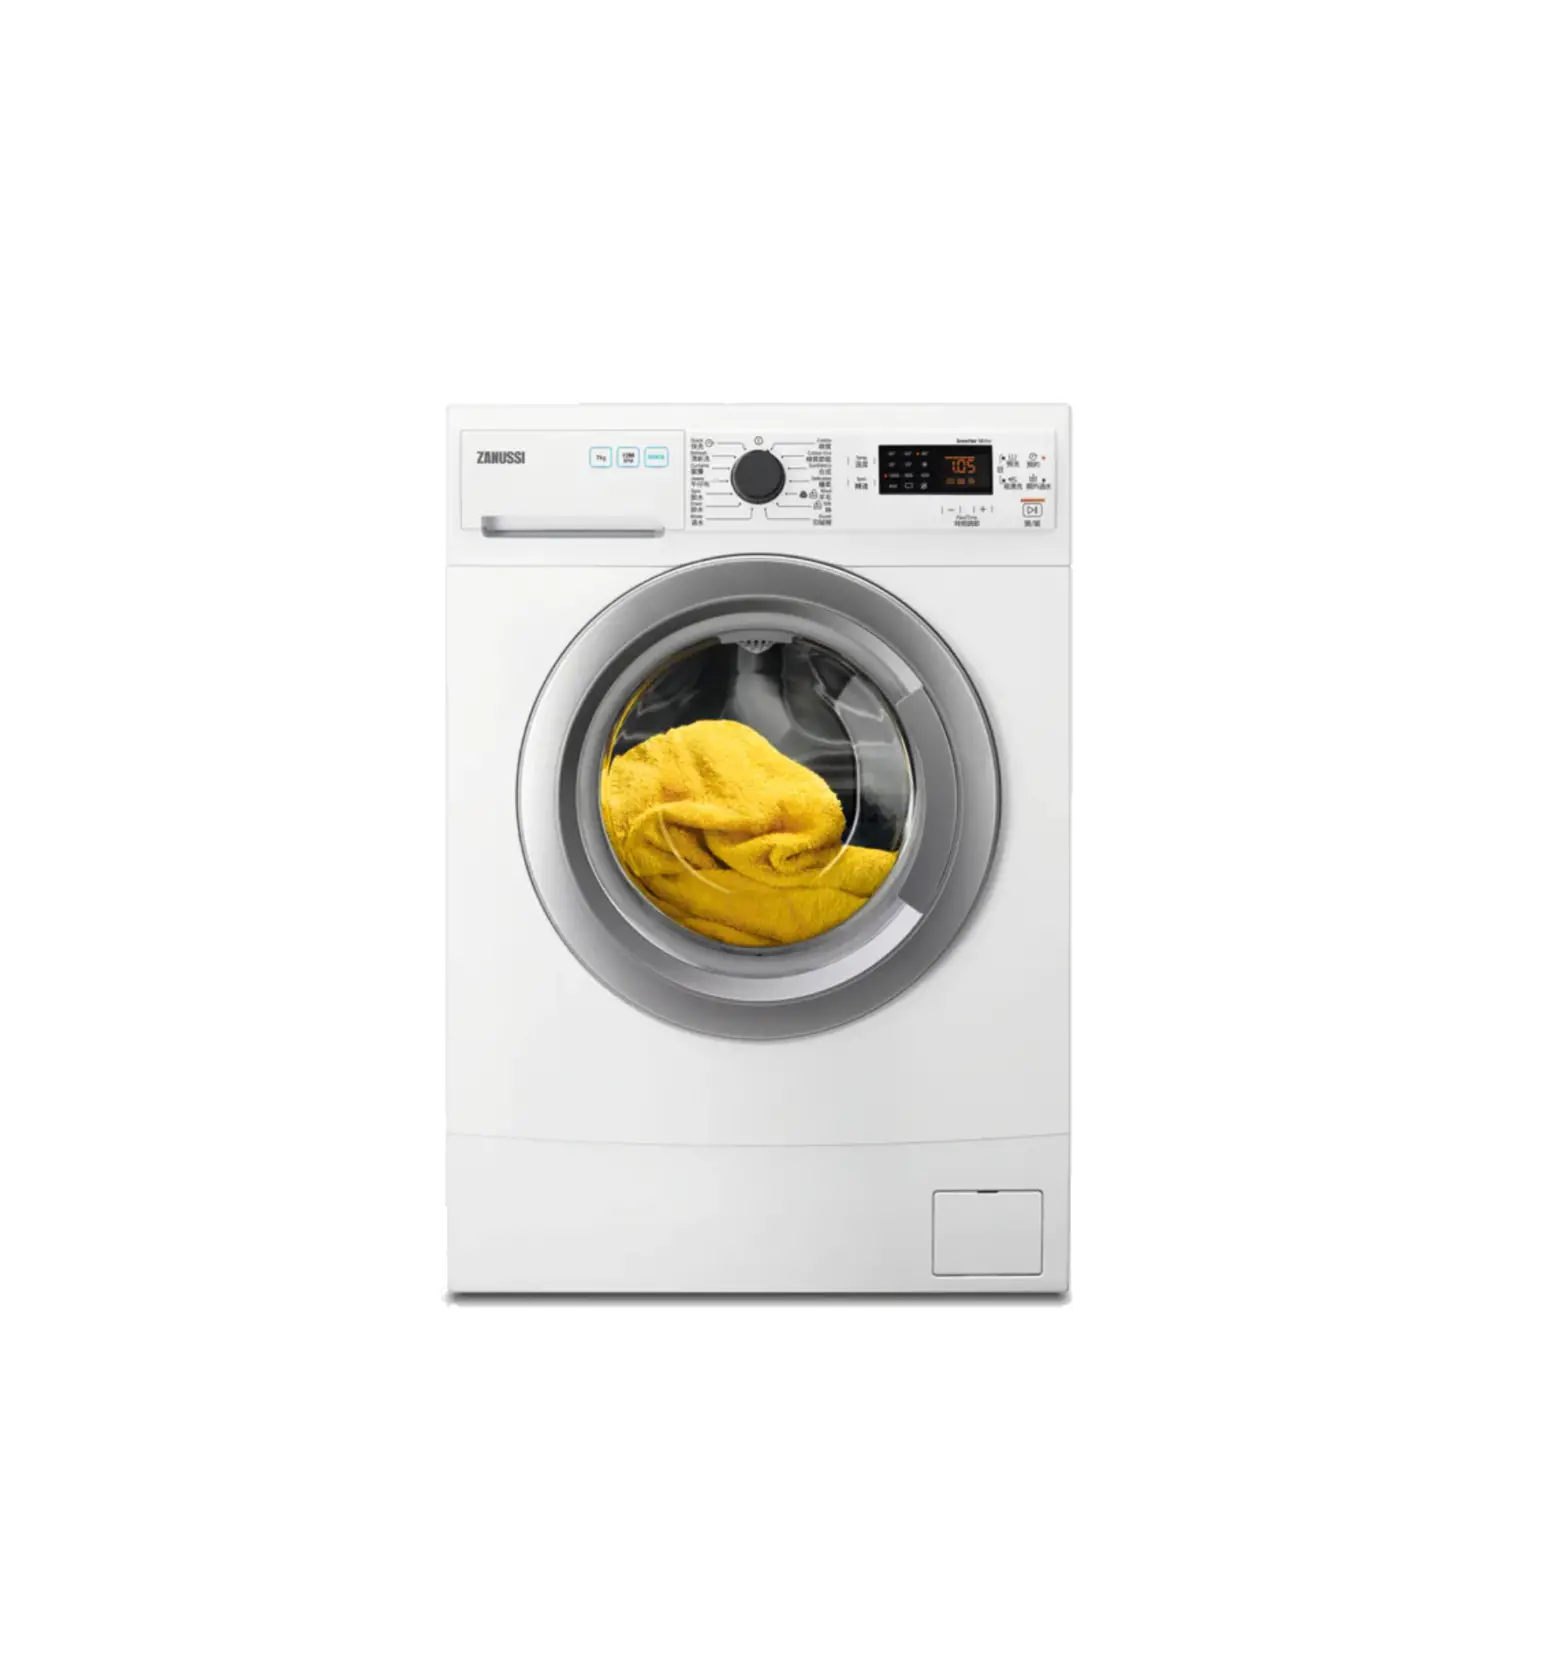 ZANUSSI ZWS714B5S 7kg Slim Front Loading Washing Machine User Manual